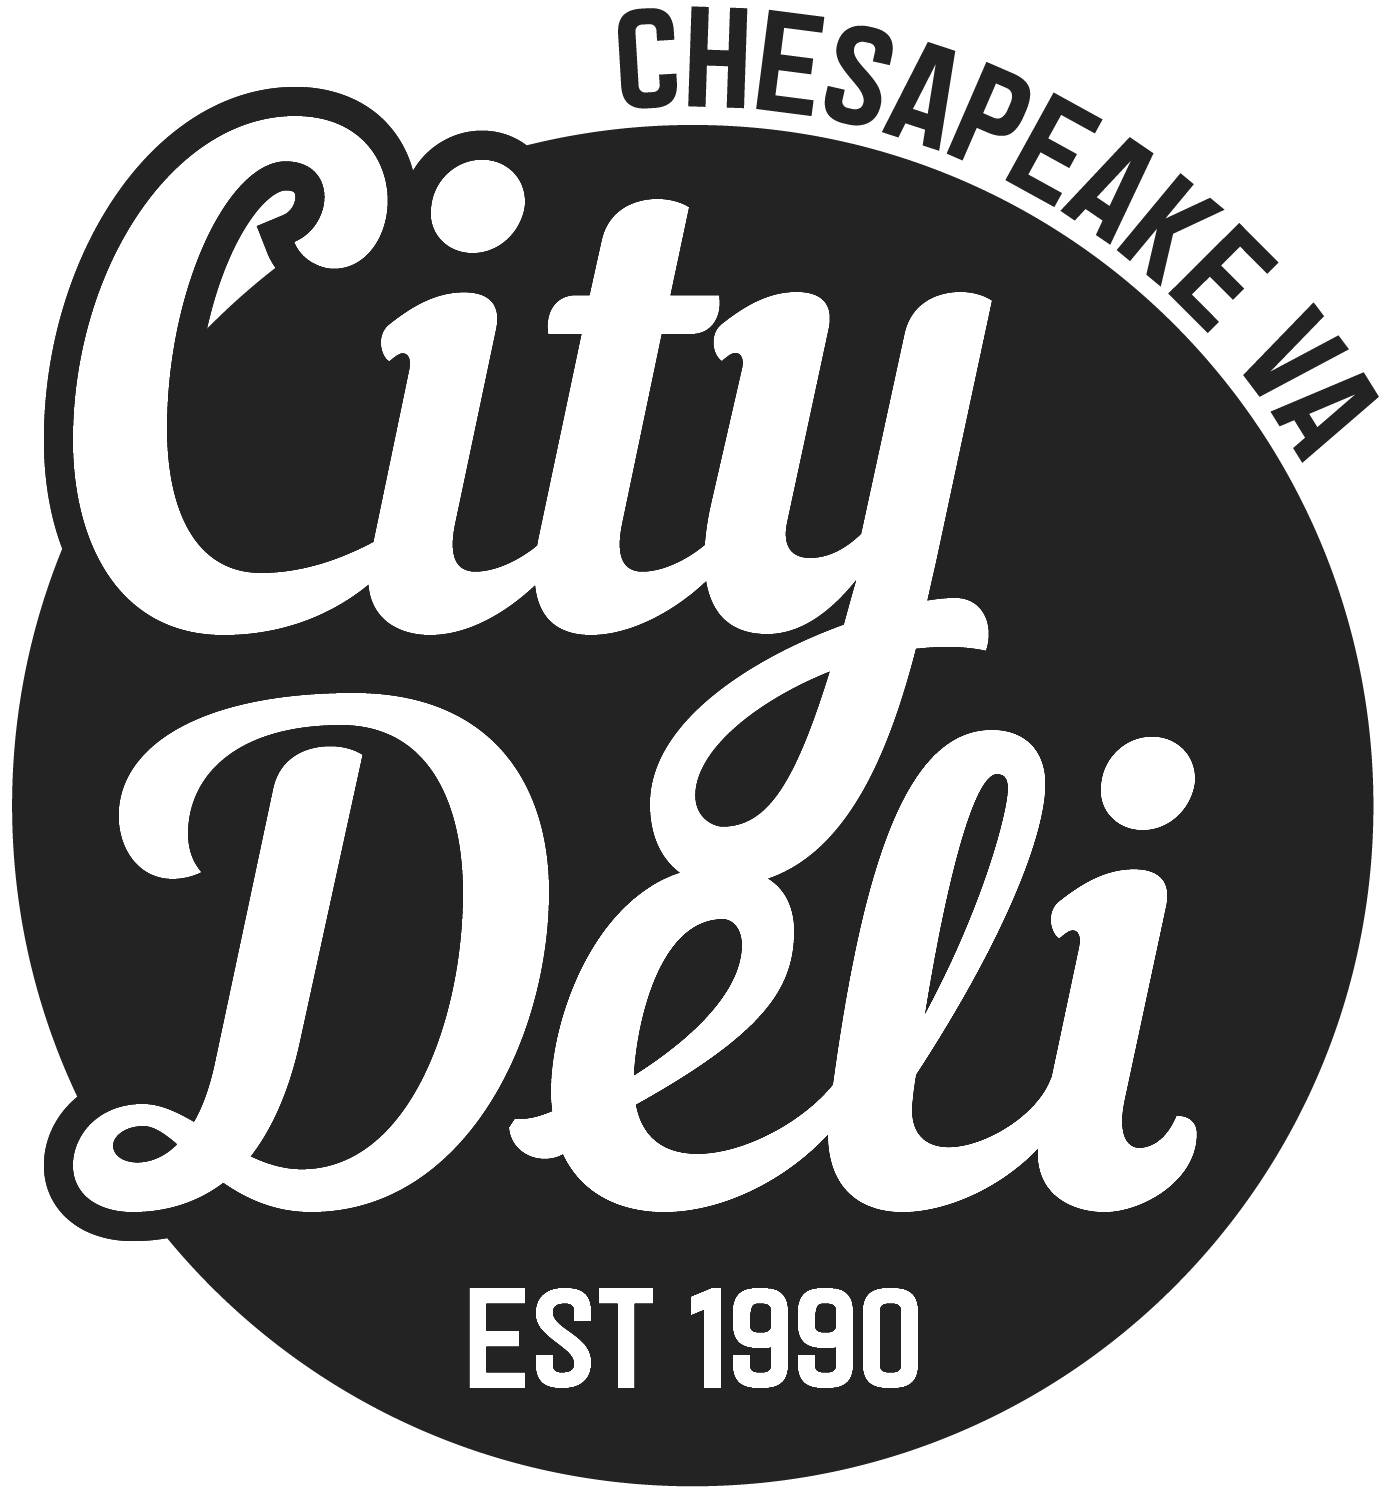 City Deli